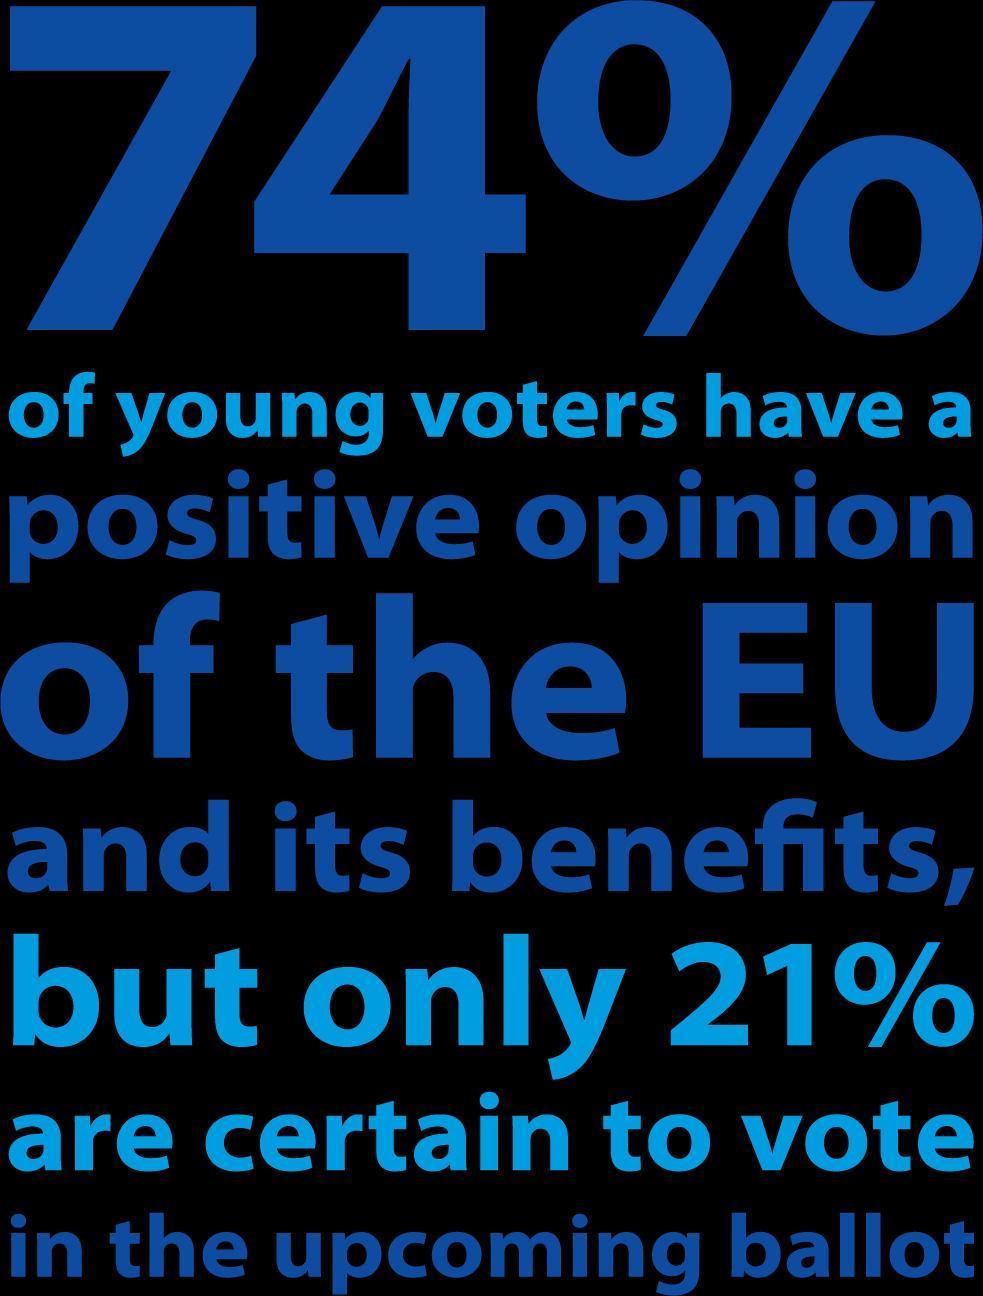 74% от младите гласоподаватели имат положително мнение за ЕС и ползите от него, но само 21% са сигурни, че ще гласуват Допълнителна